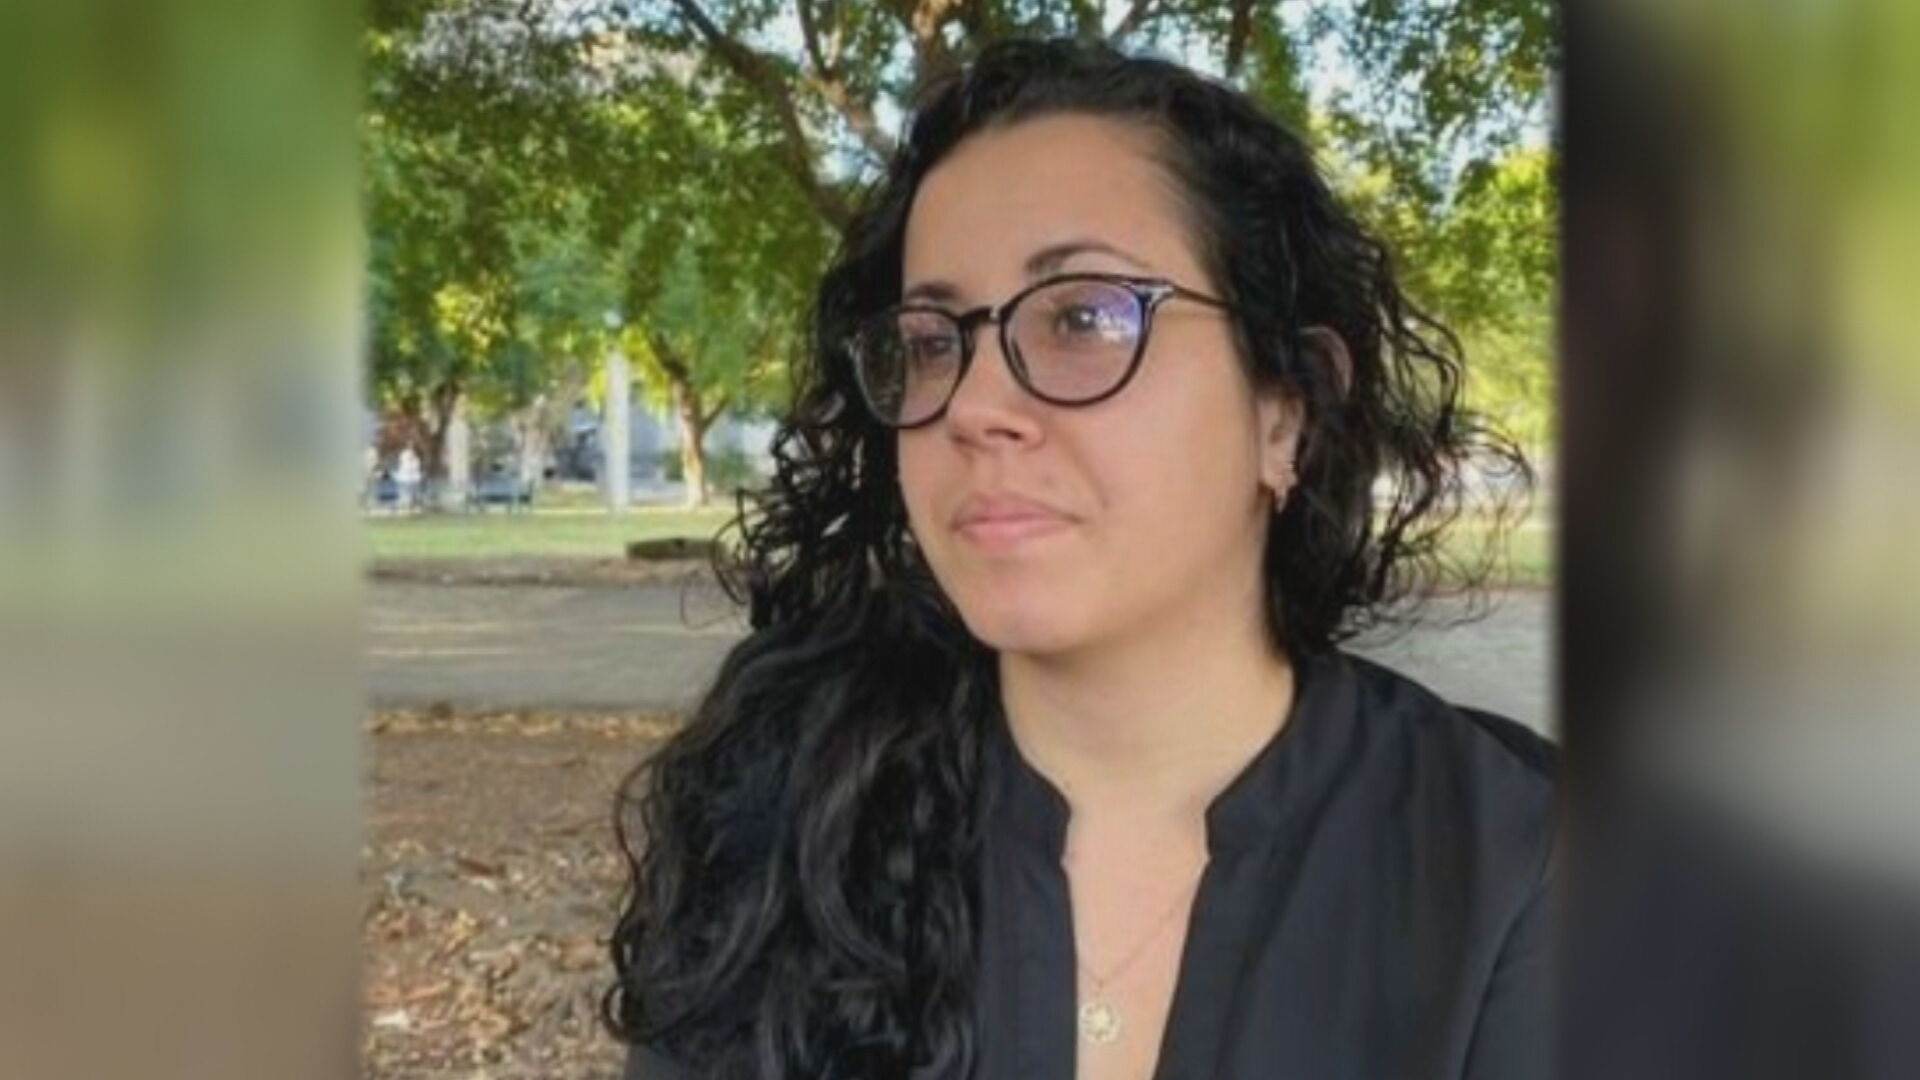 A jornalista espanhola Camila Acosta foi presa em Cuba